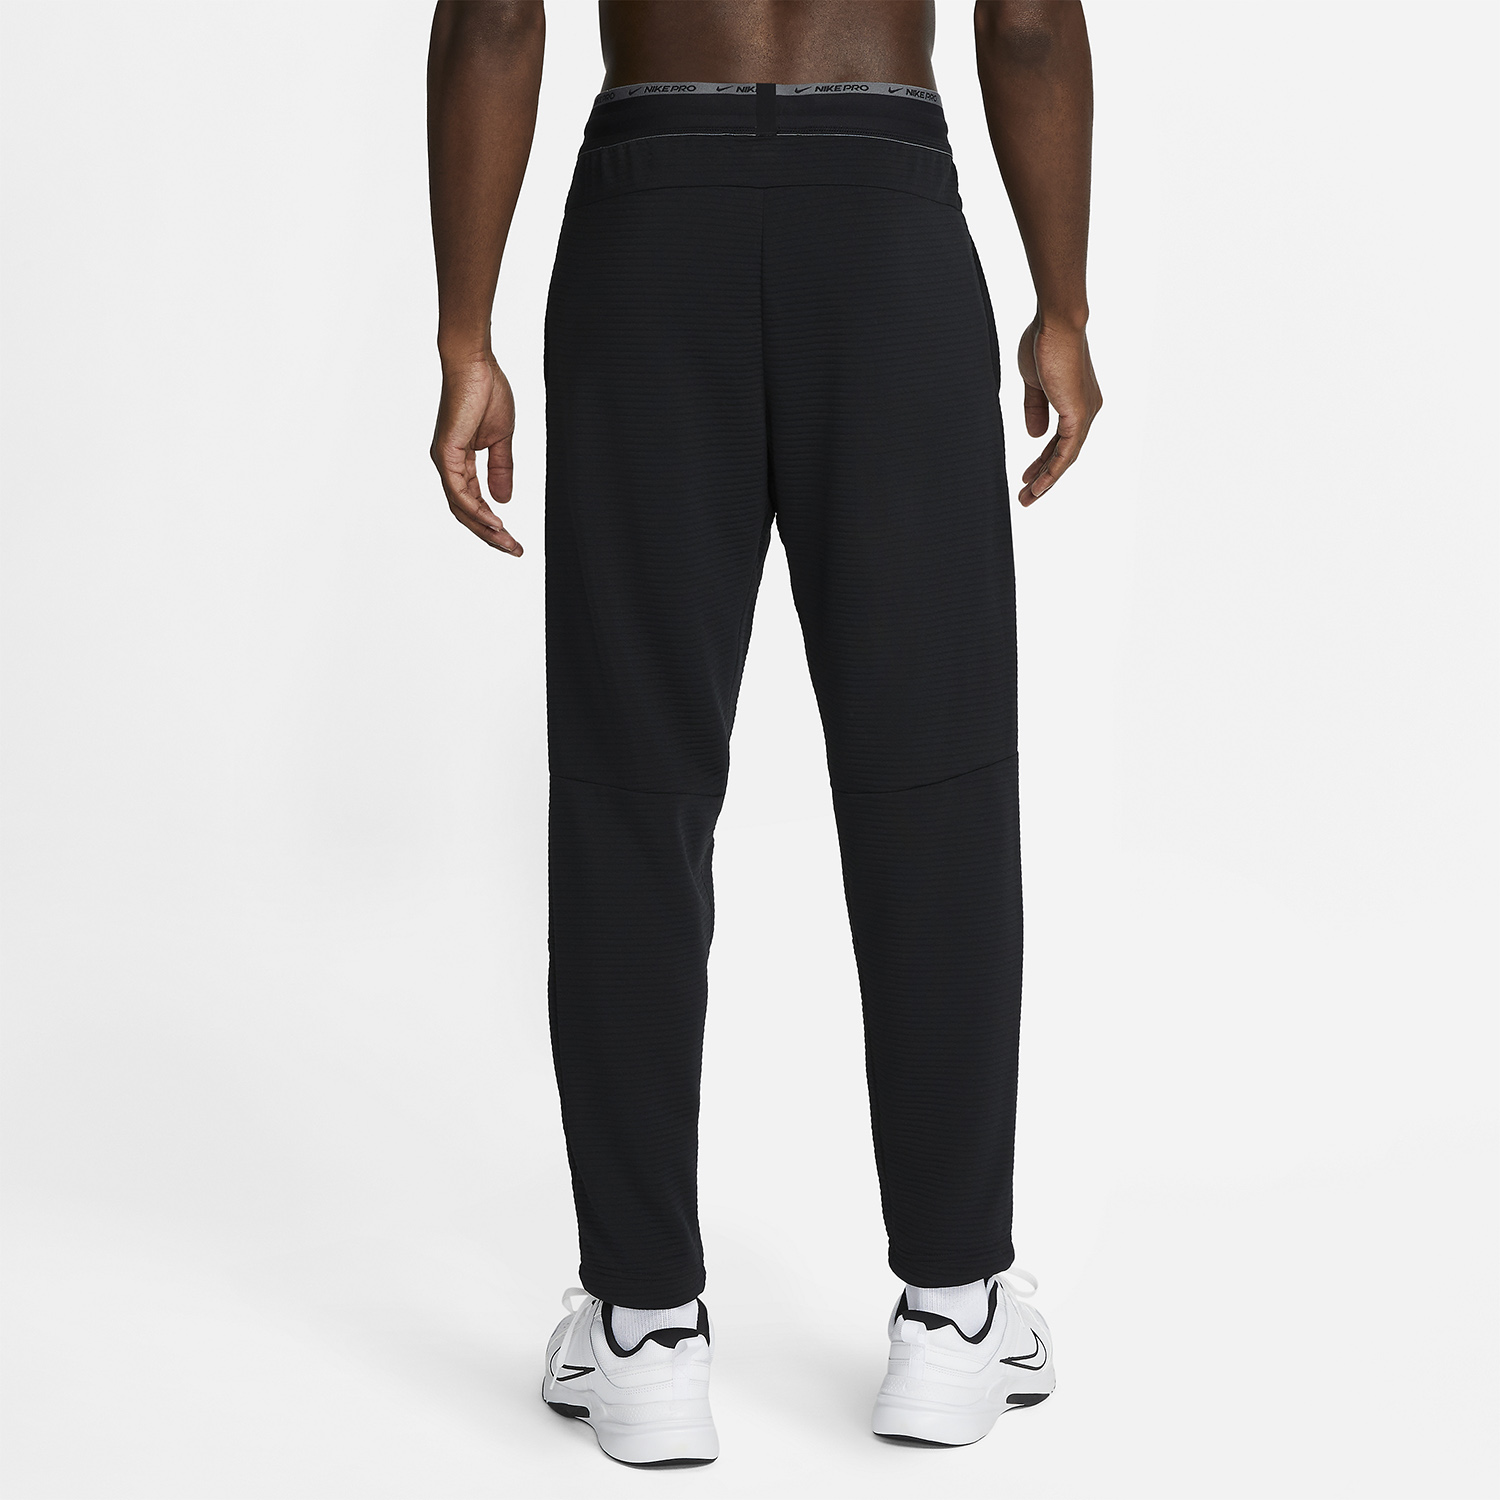 Nike Dri-FIT Pro Men's Training Pants - Black/Iron Grey